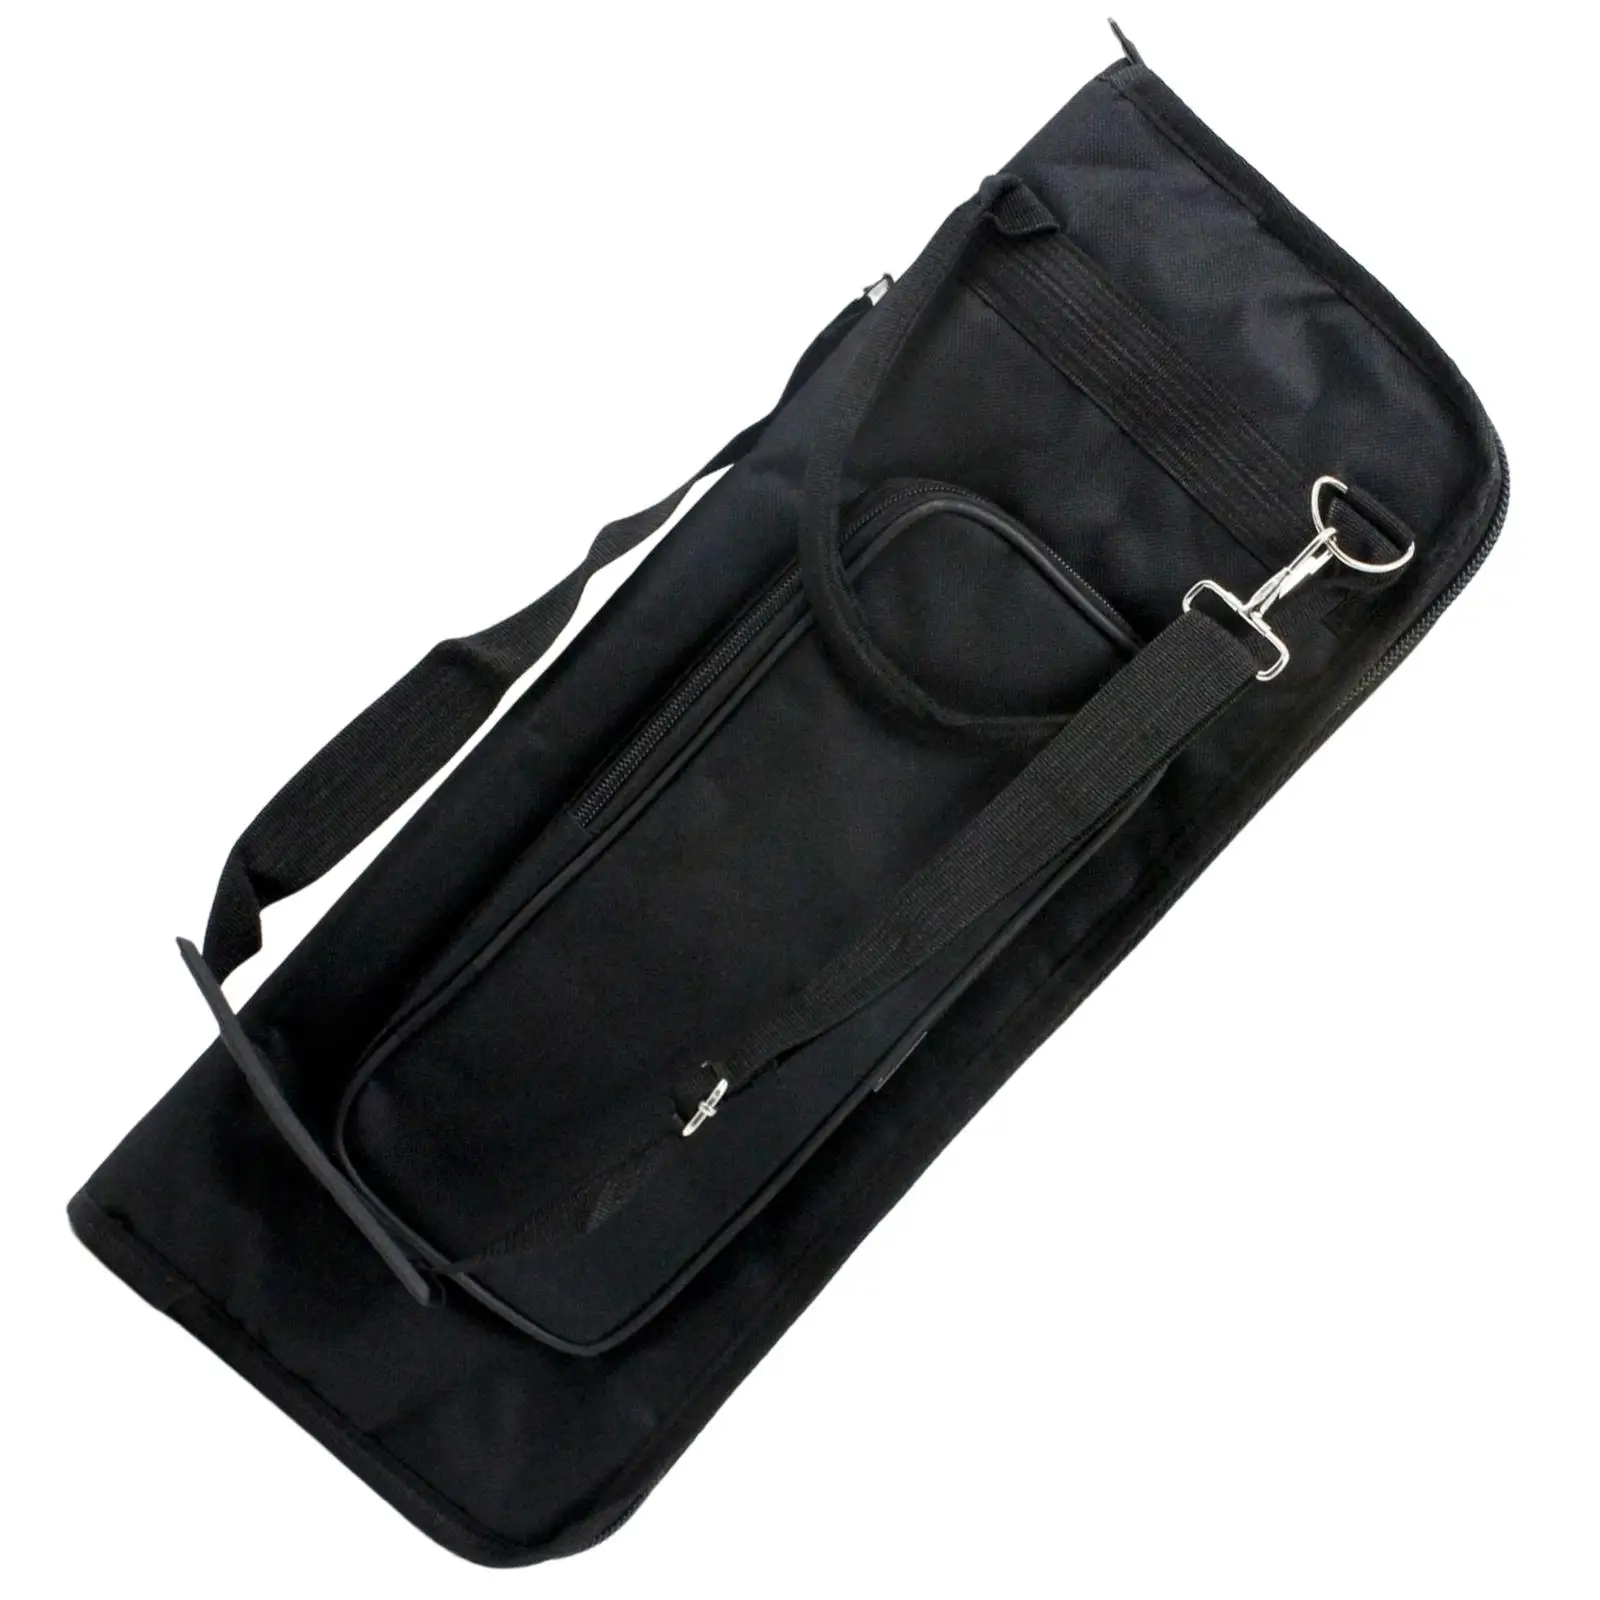 Adjustable Drum Mallet Storage Bag Drumstick Case Cover 5 Pockets for Travel